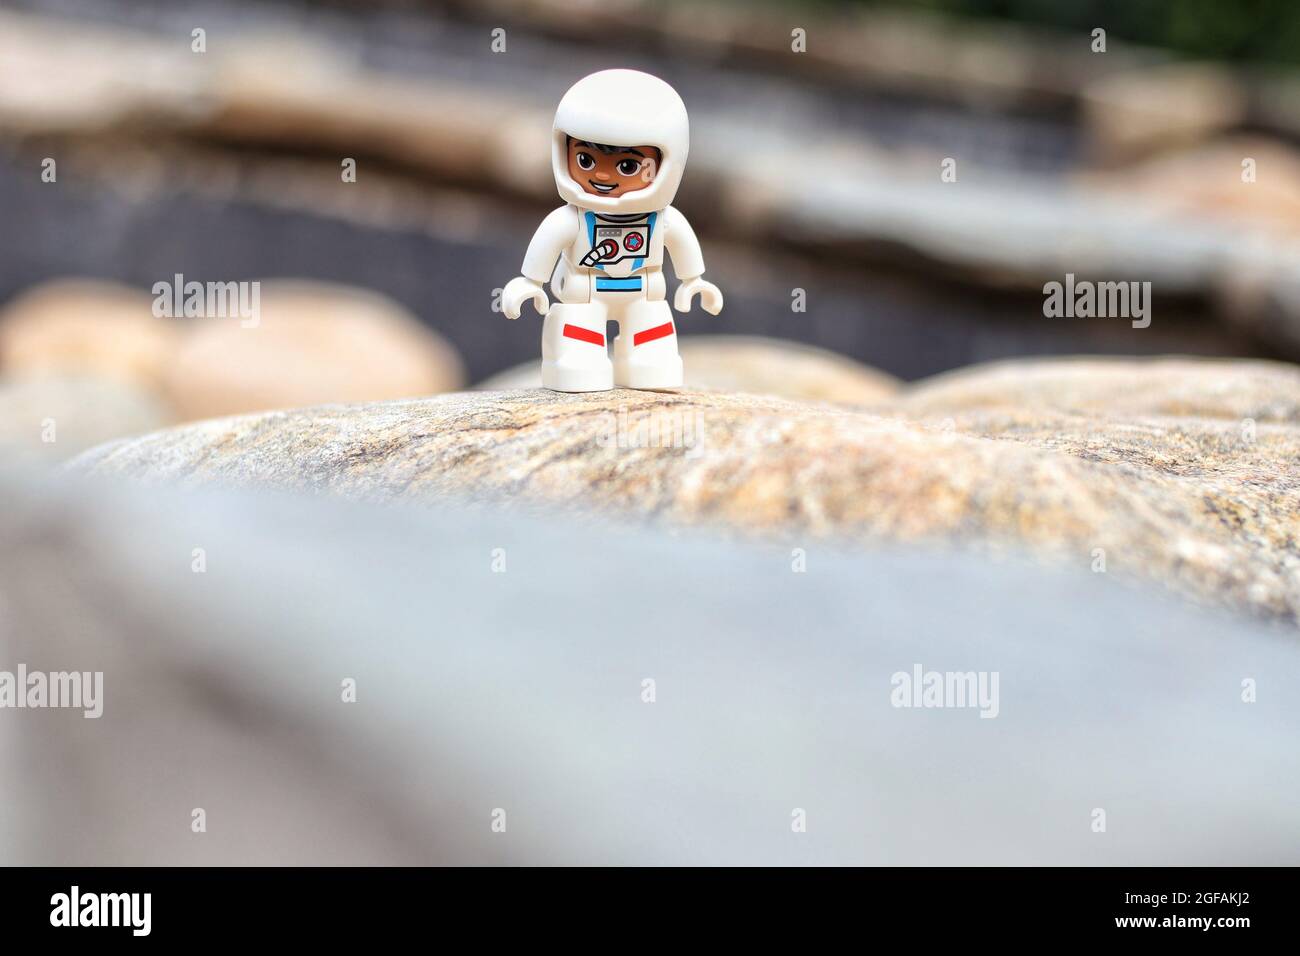 GREENVILLE, STATI UNITI - 31 luglio 2021: Un primo piano di un personaggio giocattolo dell'astronauta Lego su sfondo sfocato Foto Stock